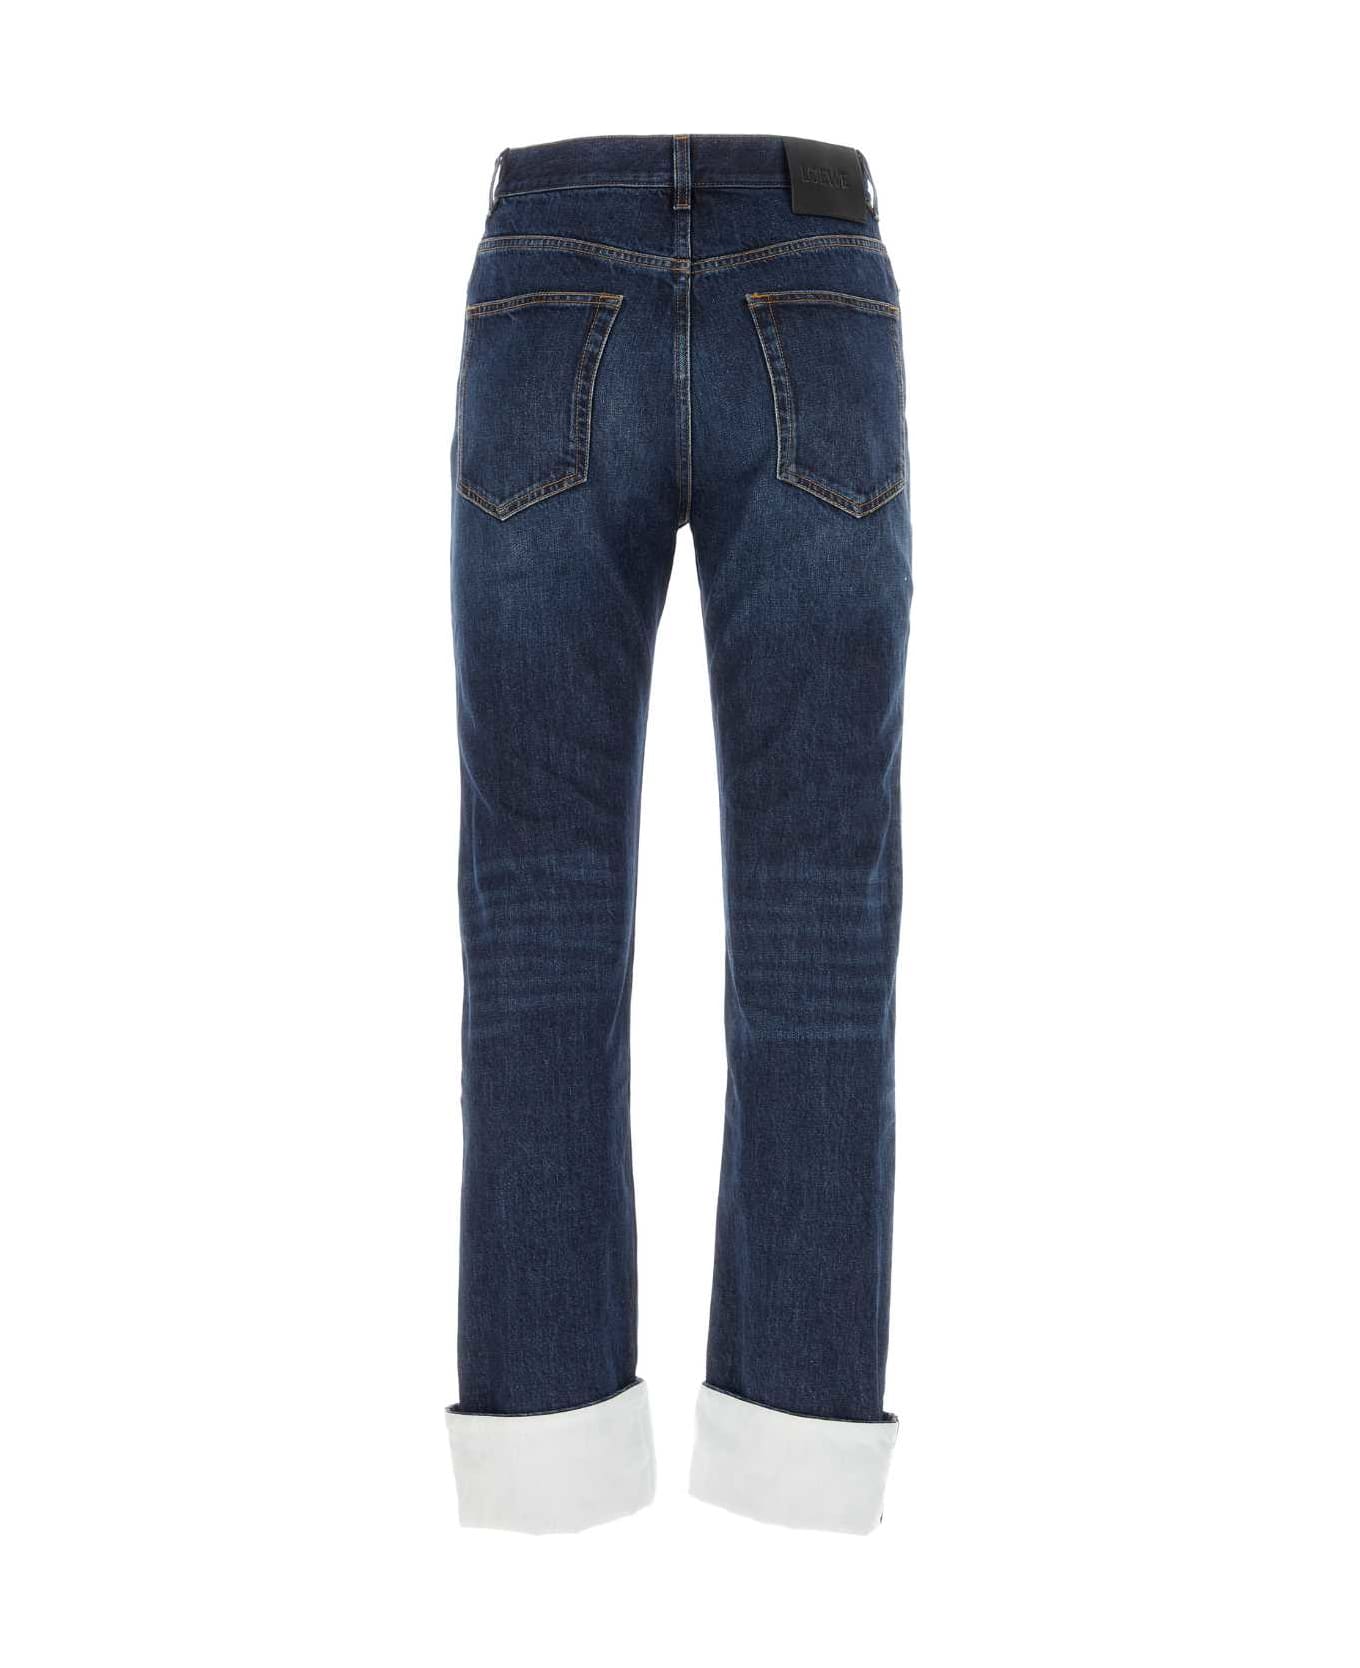 Loewe Denim Jeans - WASHEDINDIGO